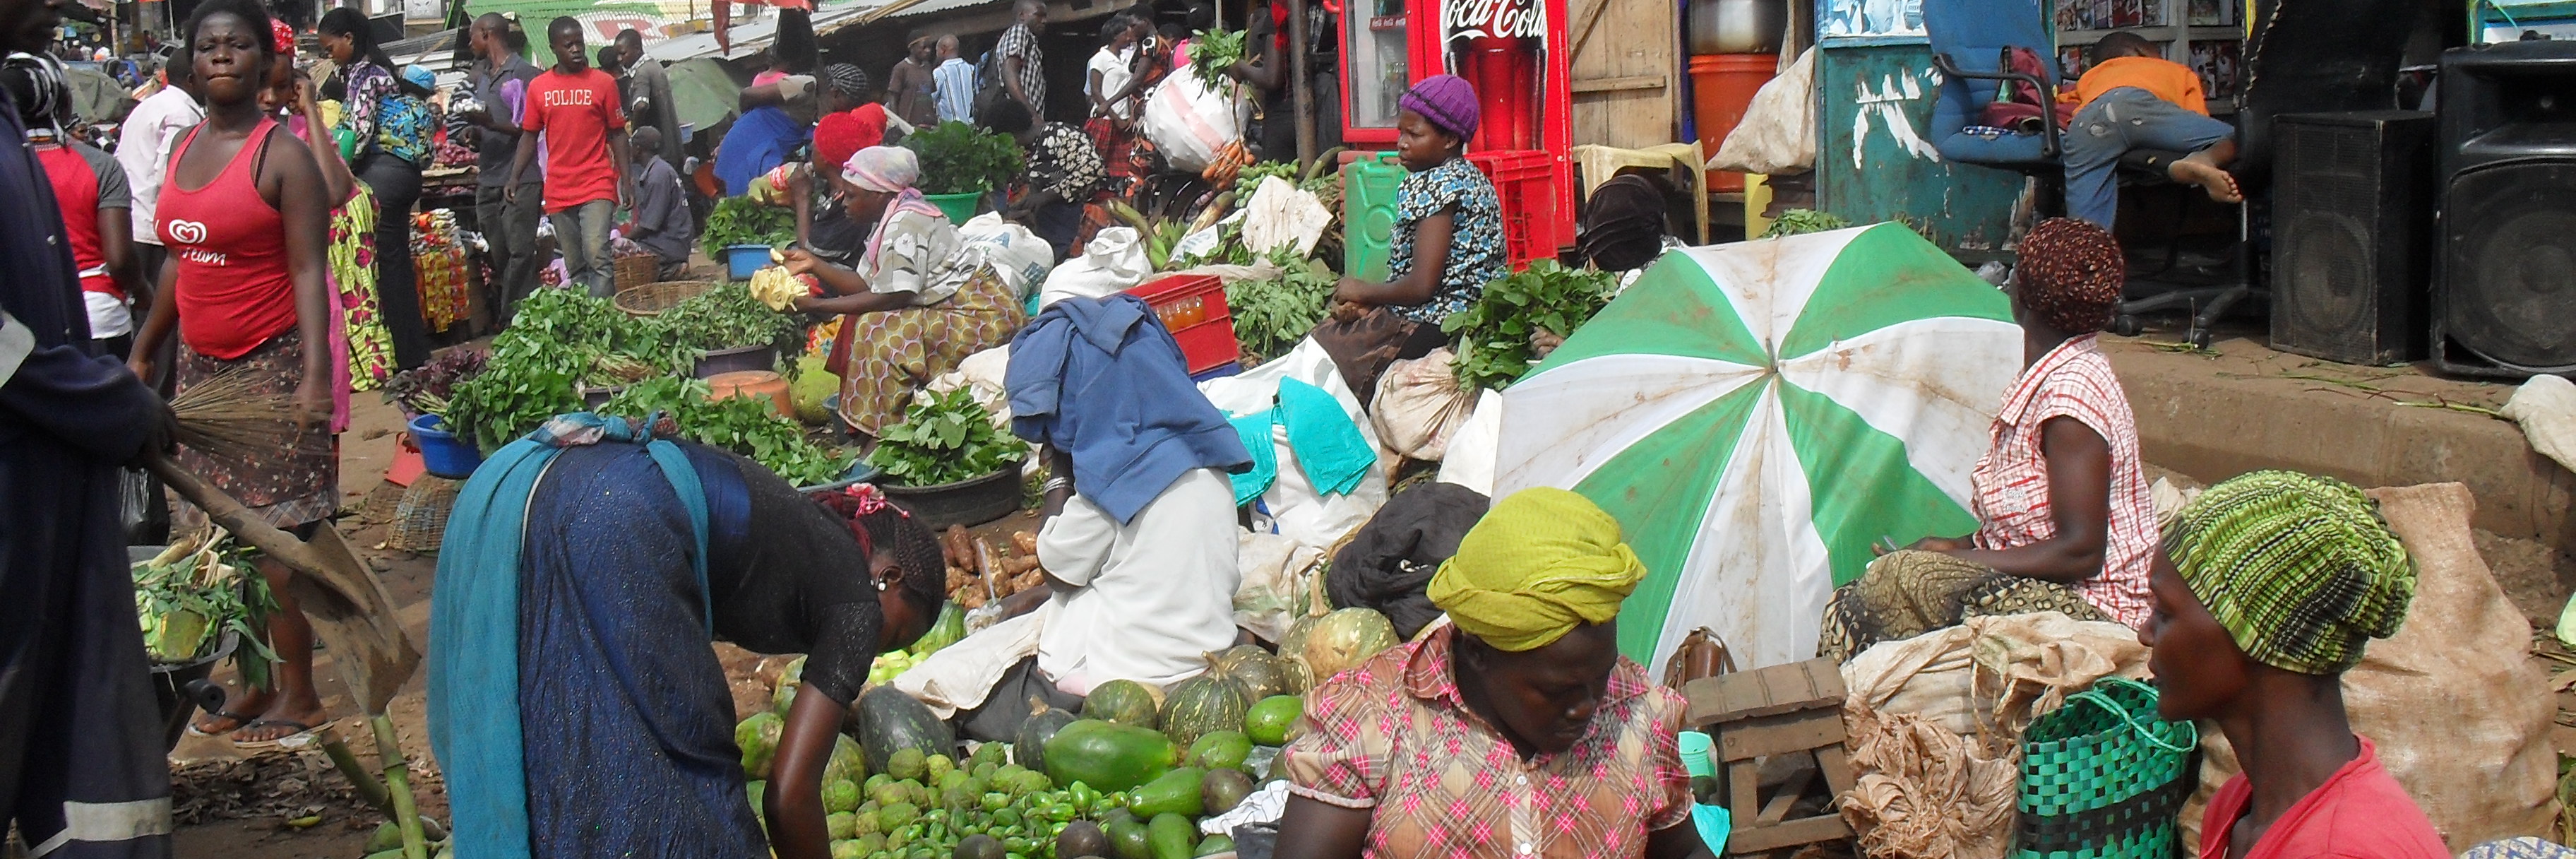 Gemüseverkäuferinnen auf einem Markt in Uganda